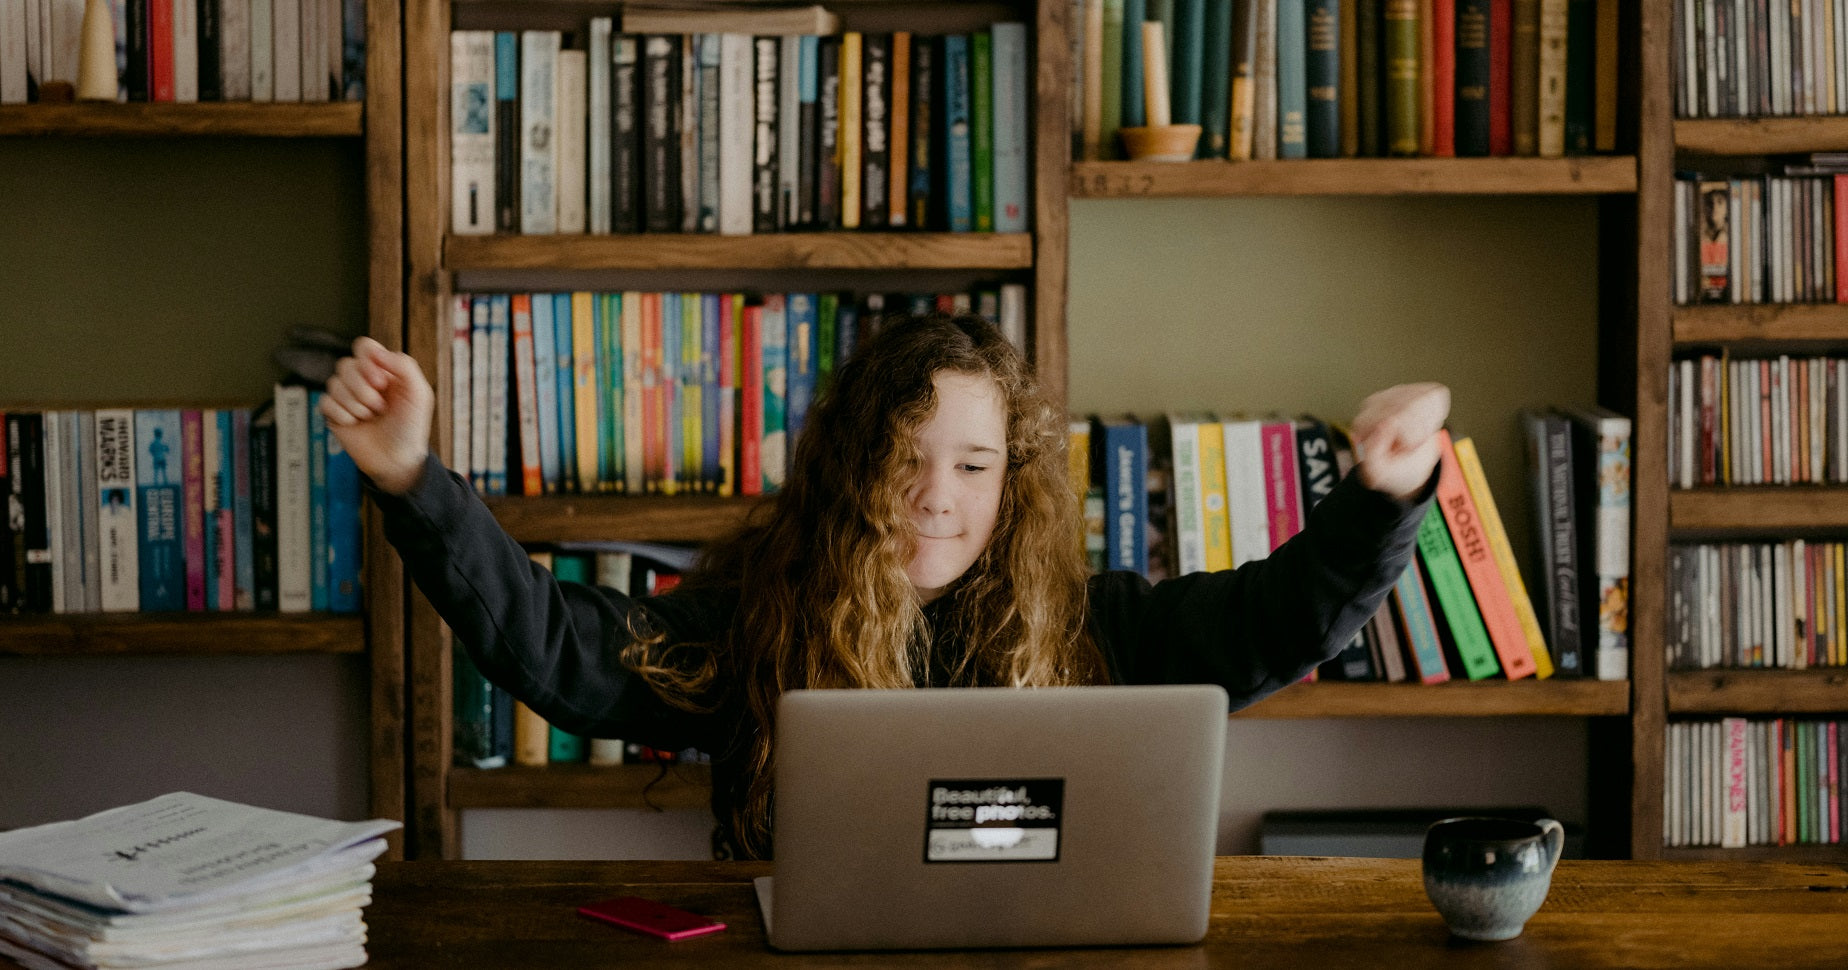 Das Foto zeigt ein junges Mädchen, dass vor einem Laptop sitzt und die Arme in die Luft streckt. Wie das Gewerbe anmelden unter 18 gelingt, zeigen wir dir im Blogbeitrag.